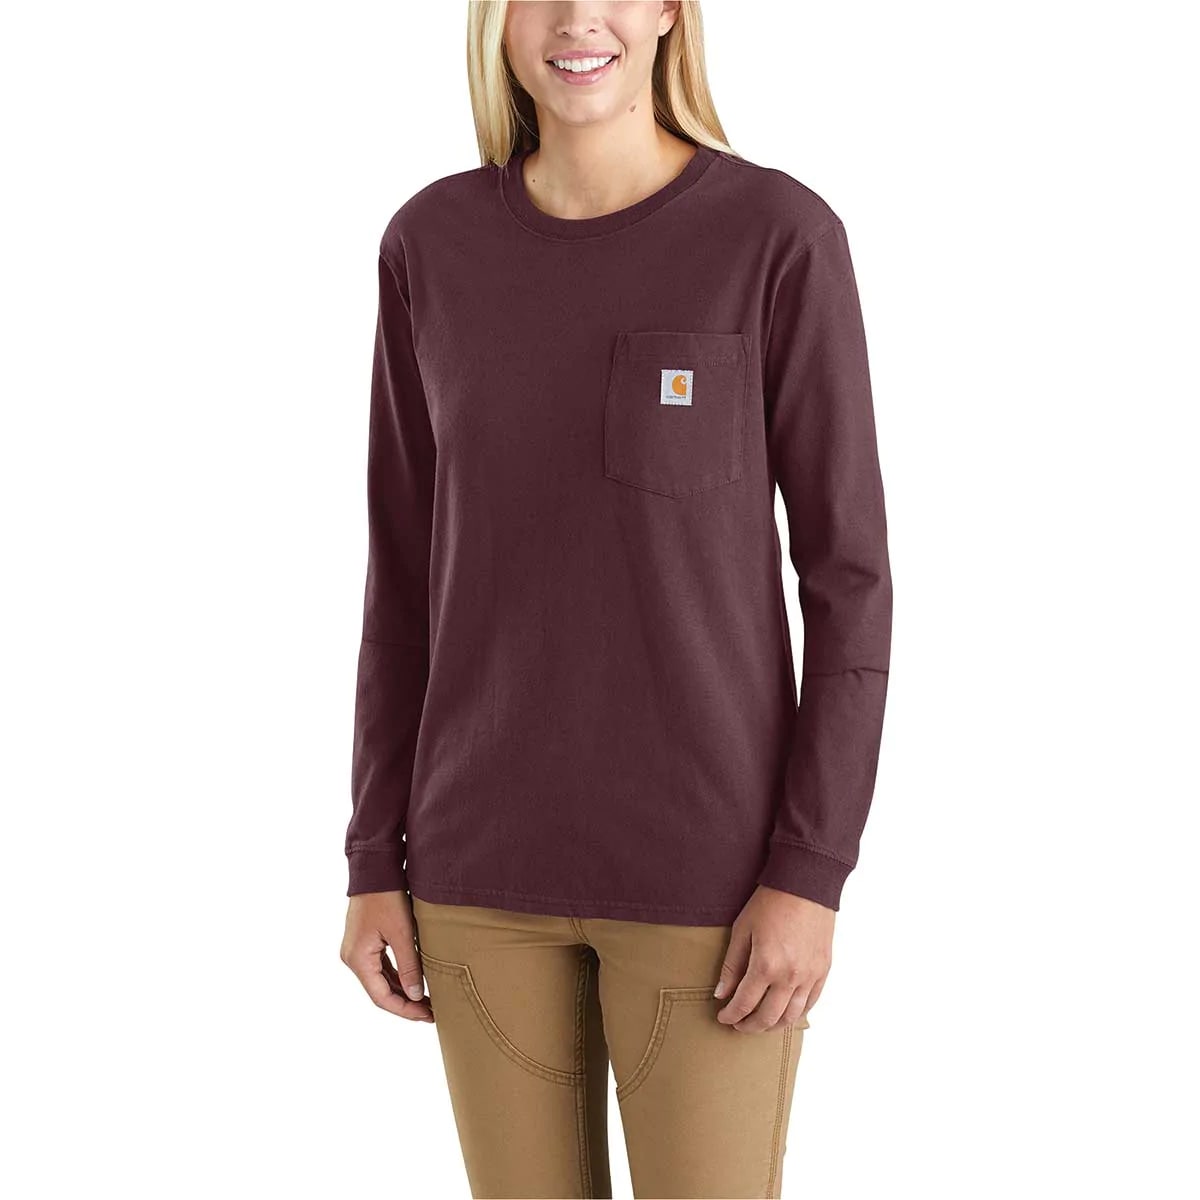 Carhartt 103244 Women's Pocket Long Sleeve T-Shirt, Deep Wine